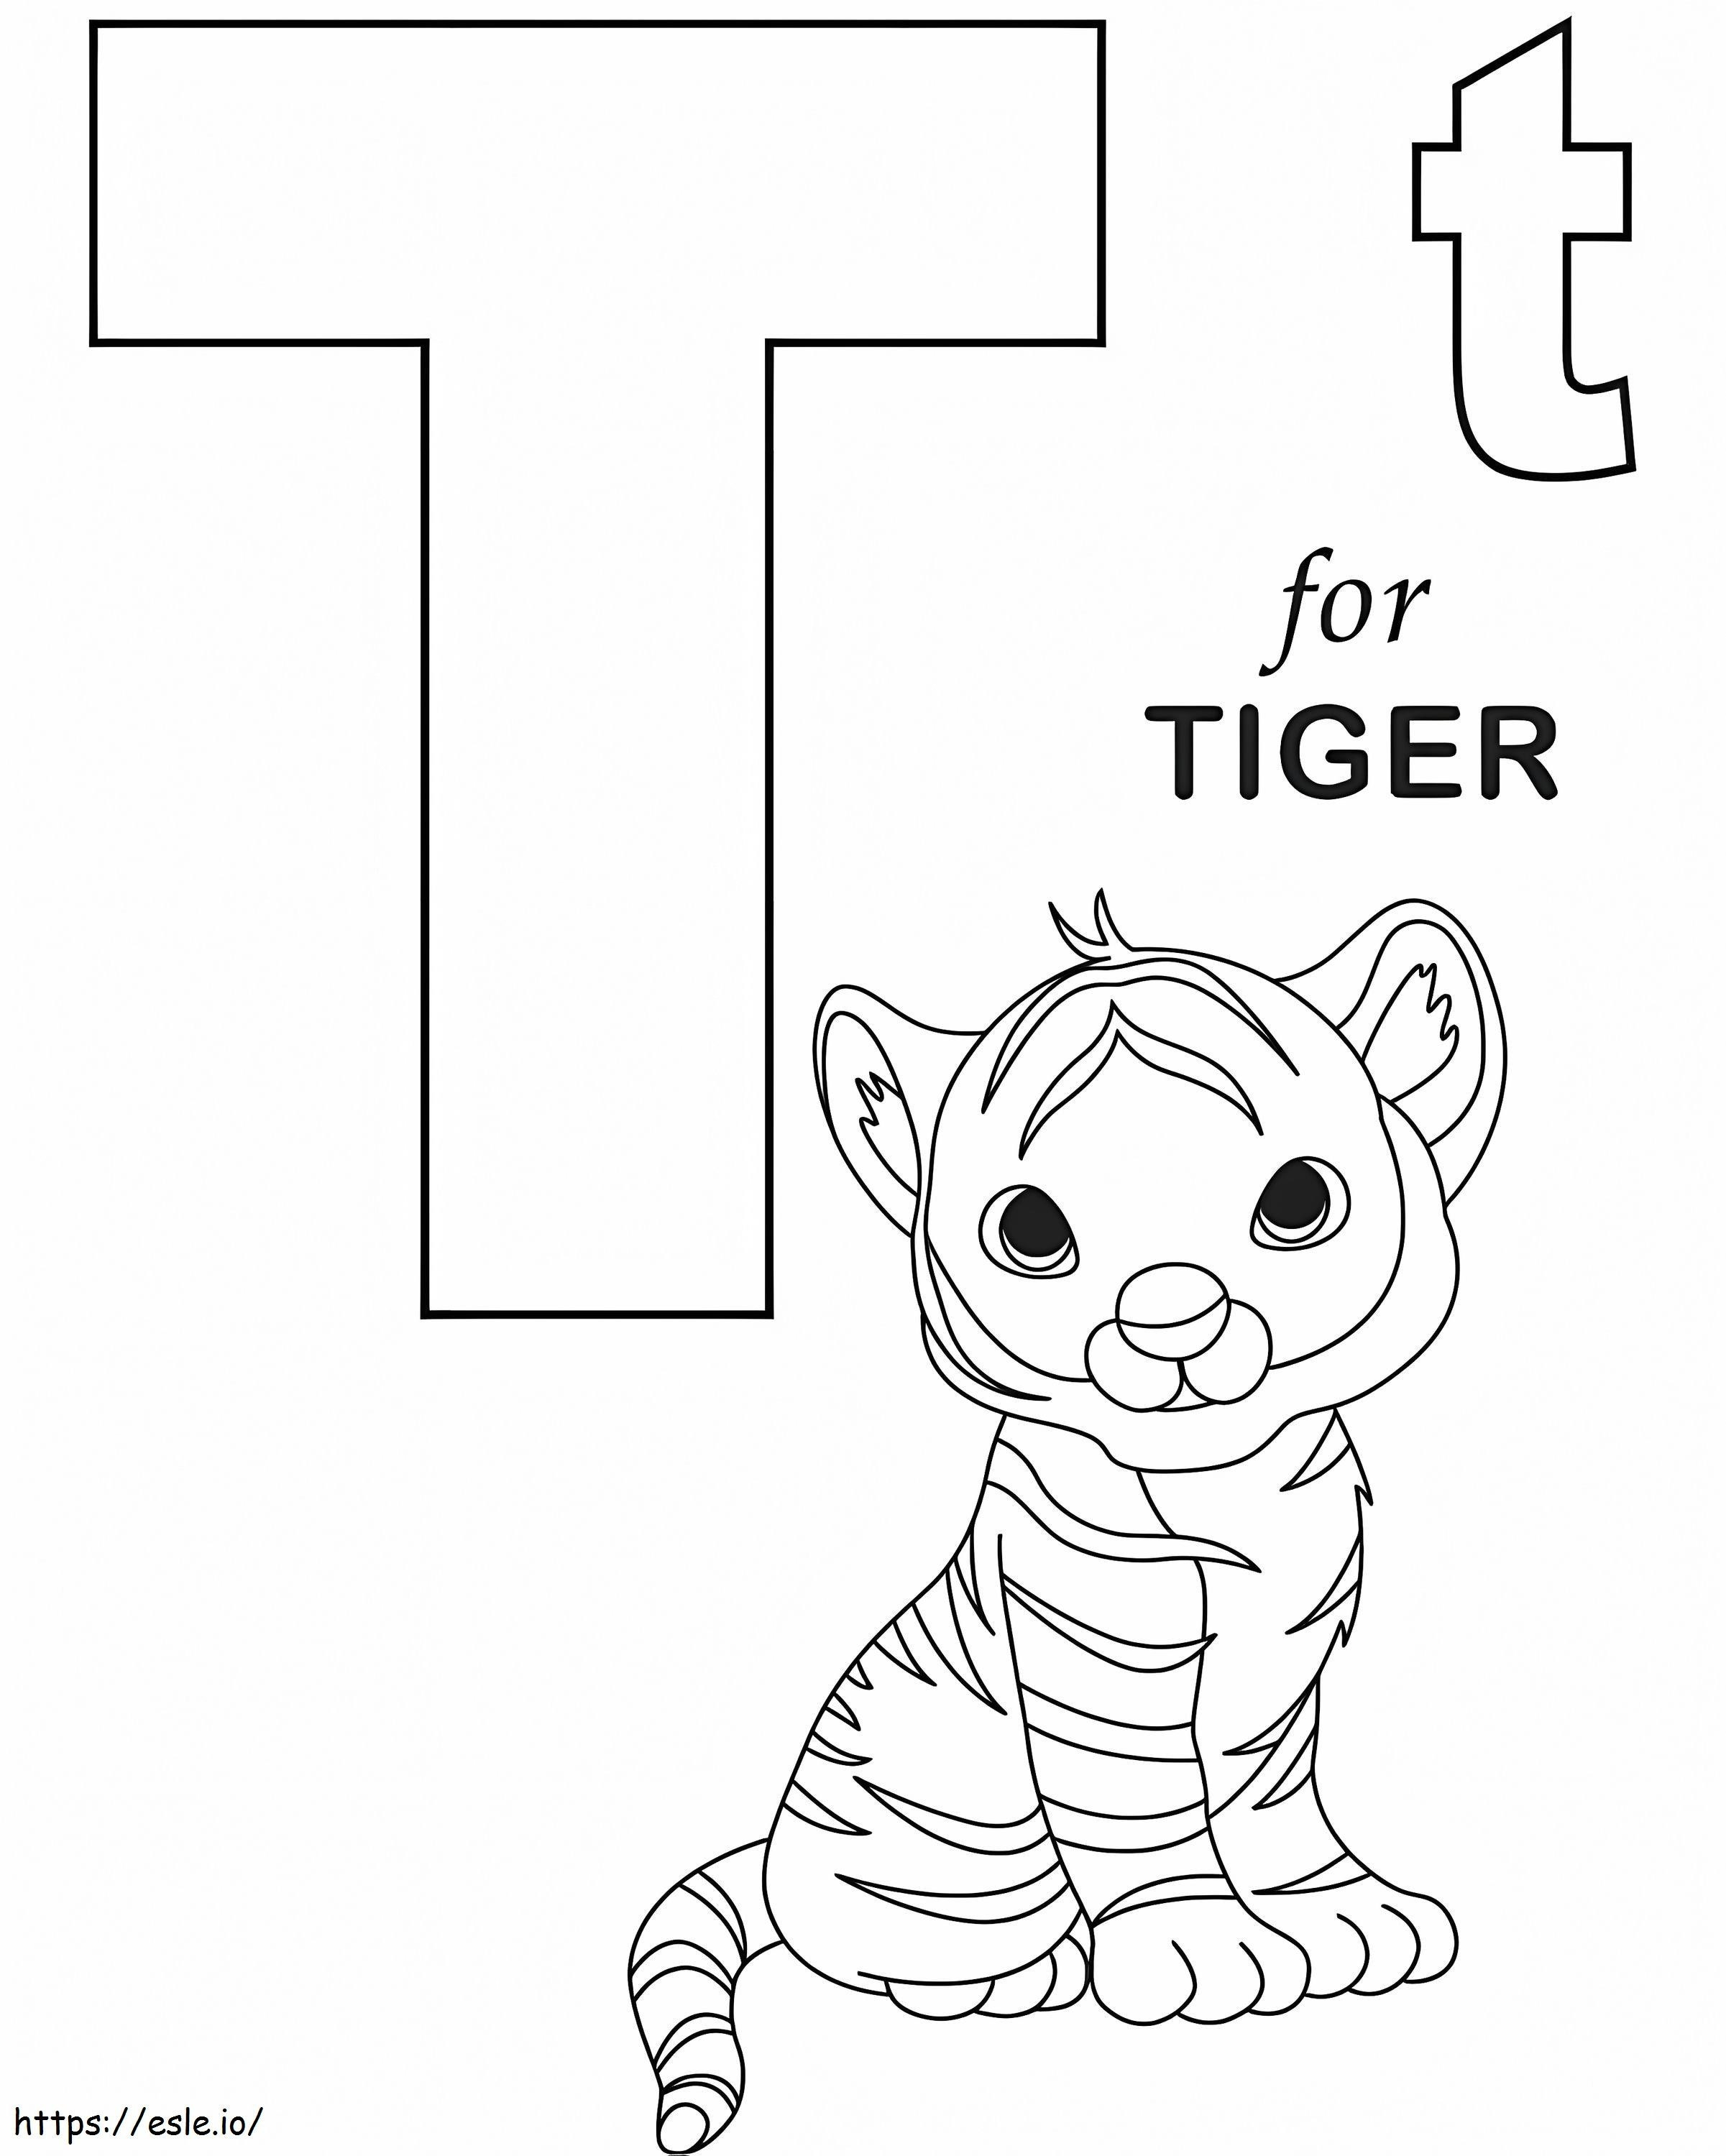 Tiger-Buchstabe T 1 ausmalbilder